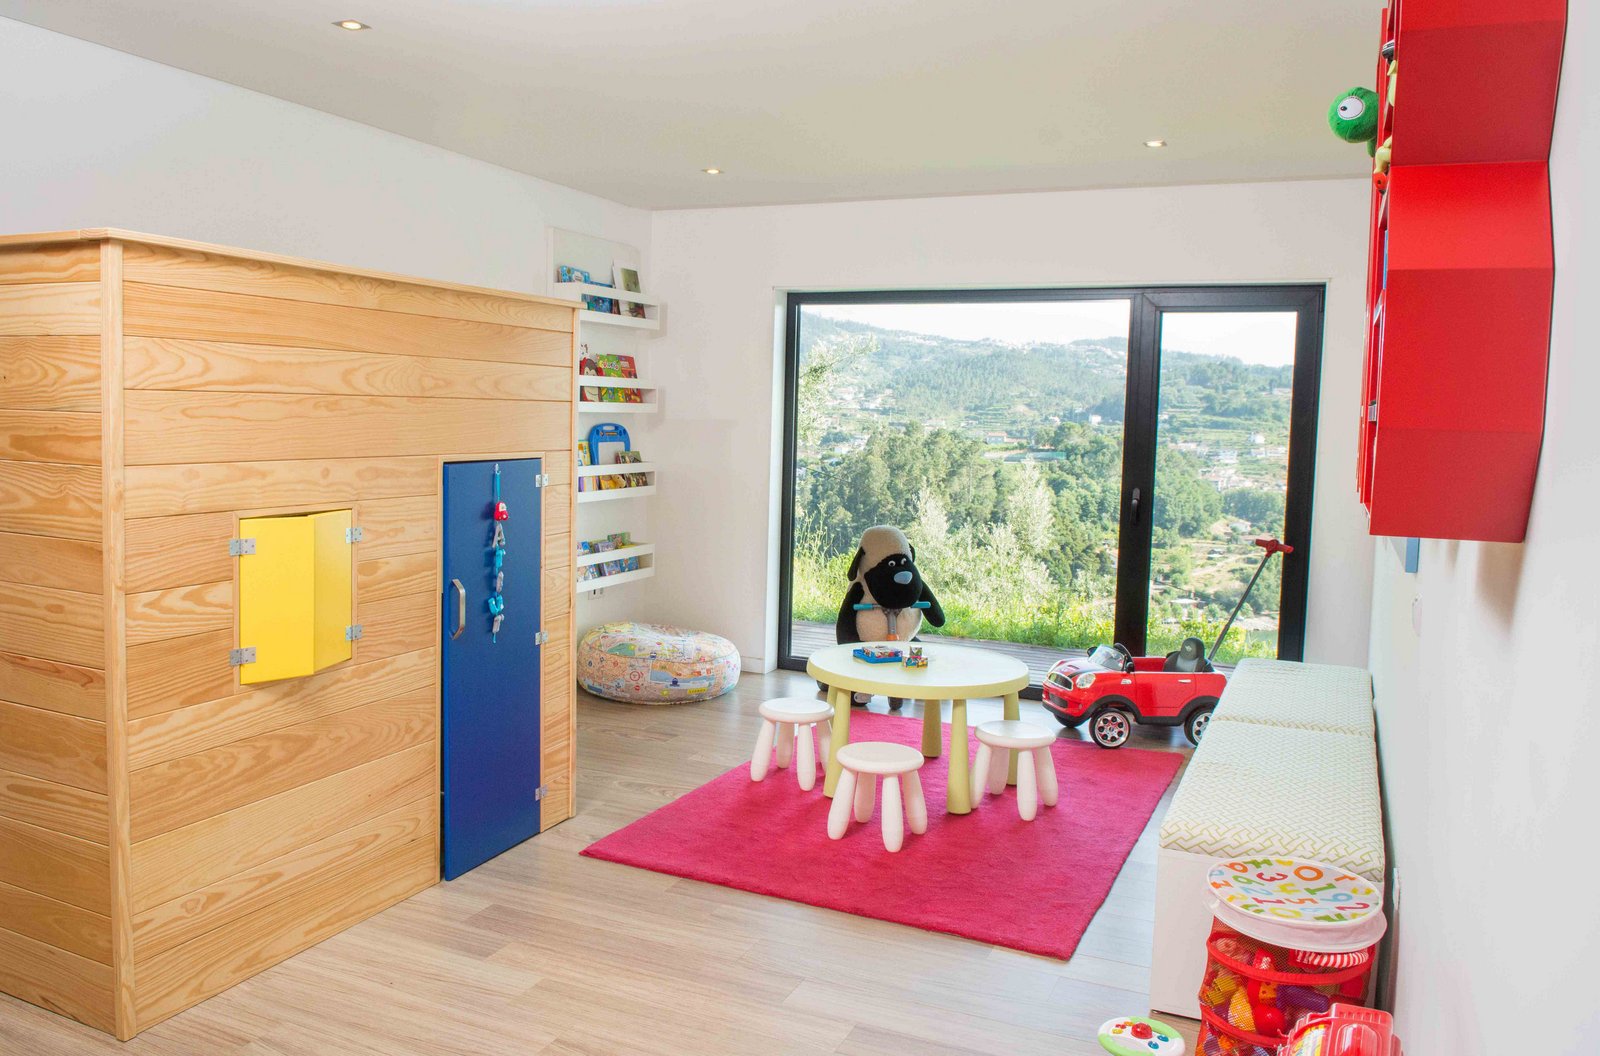 Ângela Pinheiro - Decoração de Interiores - Home Design - Decoração de Interiores - Quarto brincadeiras